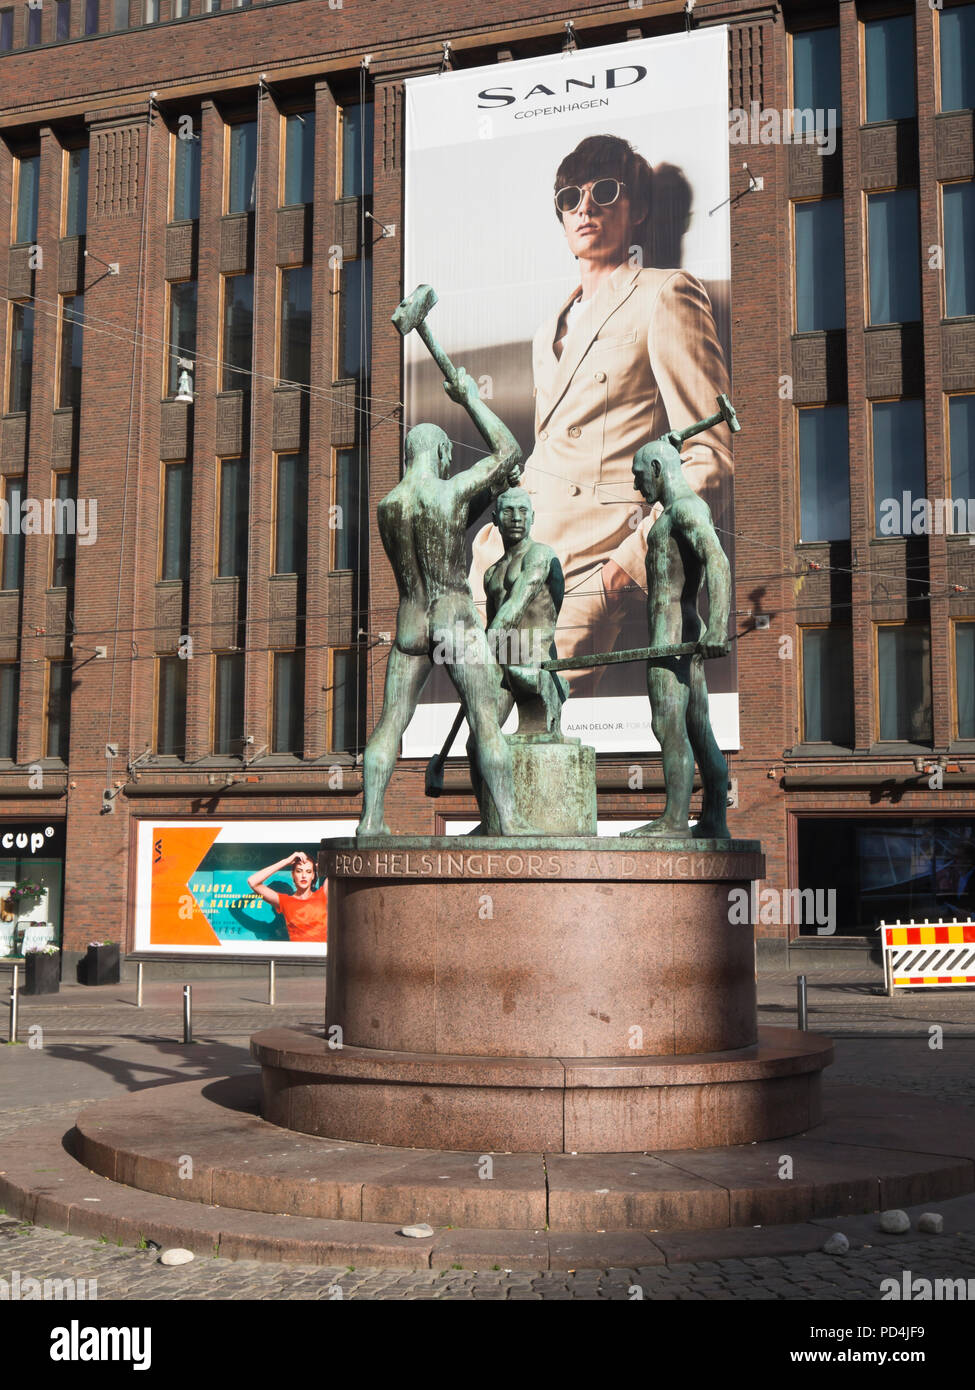 Gegensätzliche Lebensstile im Zentrum von Helsinki, Finnland, Skulptur der industriellen Hüttenarbeiter in Bronze gegen ein Gigant board Förderung Sand Marke gesetzt Stockfoto